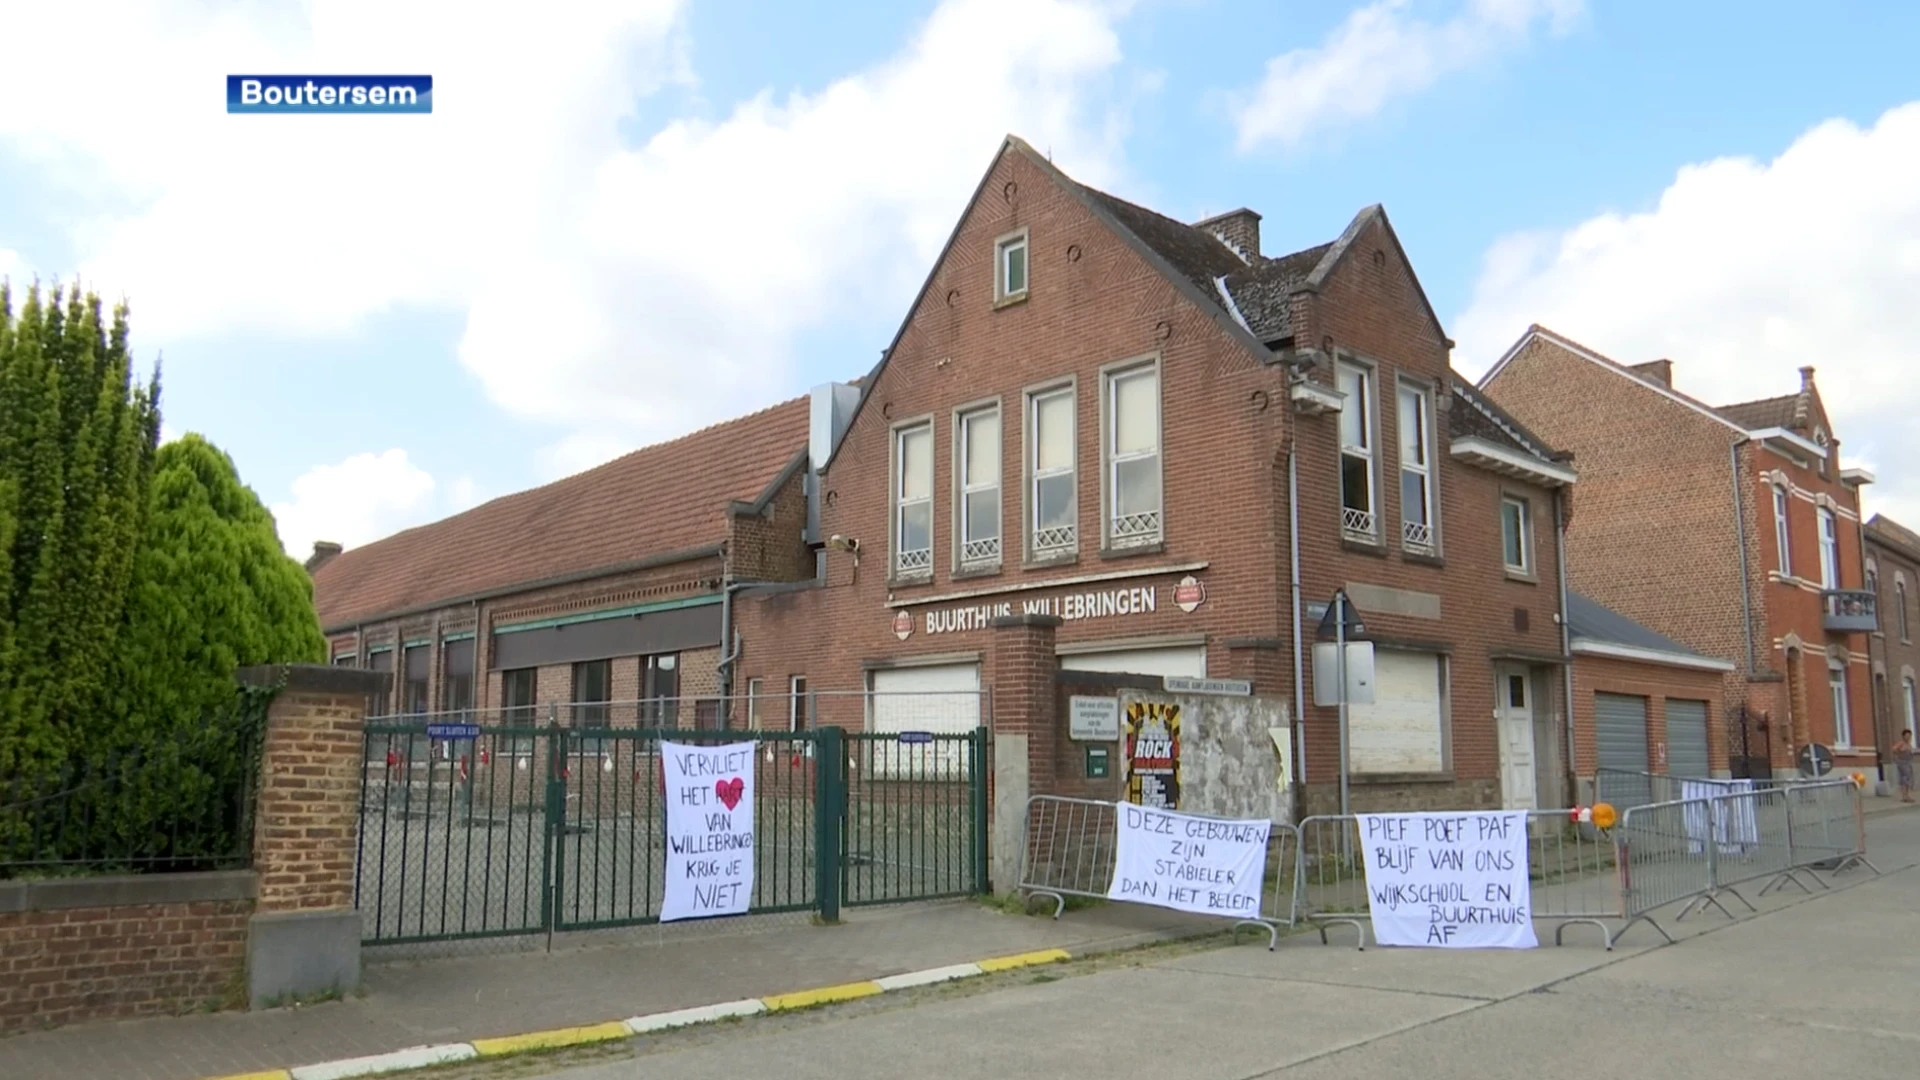 Sluiting van wijkschool en buurthuis van Willebringen beroert de gemoederen in Boutersem